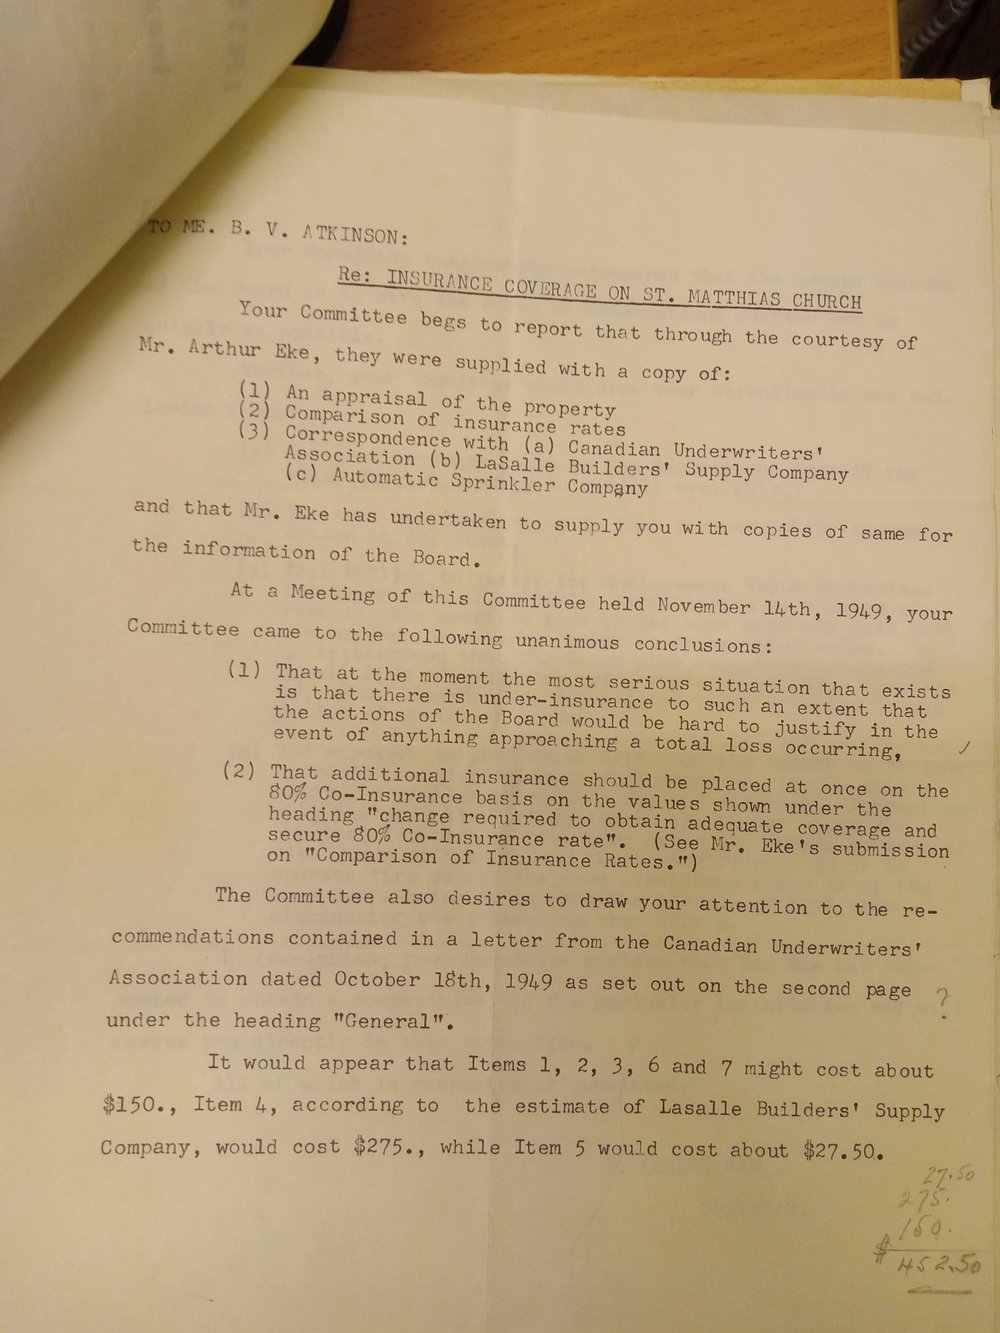 Insurance Committee Report 1949 1.jpg